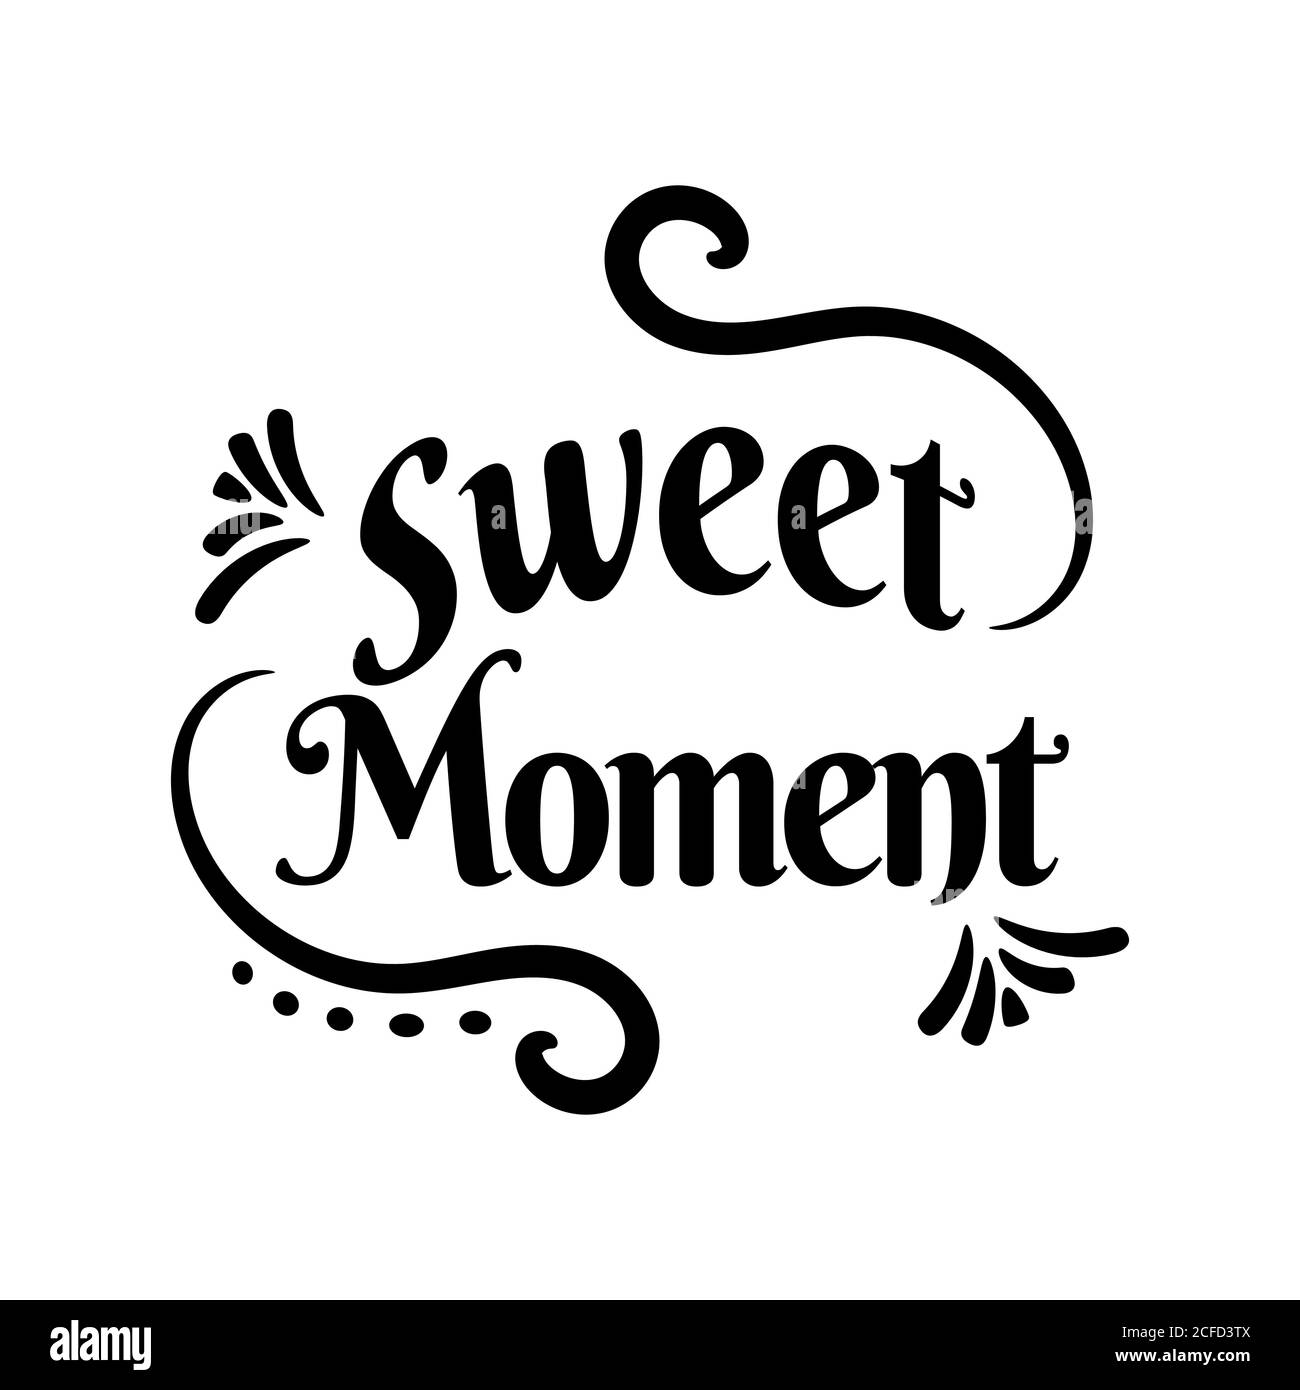 Kalligraphisches Design Vektor-Illustration mit handgezeichneter Schrift "Sweet Moment" Inschrift Für Einladungs- und Grußkartendrucke und Poster Stock Vektor